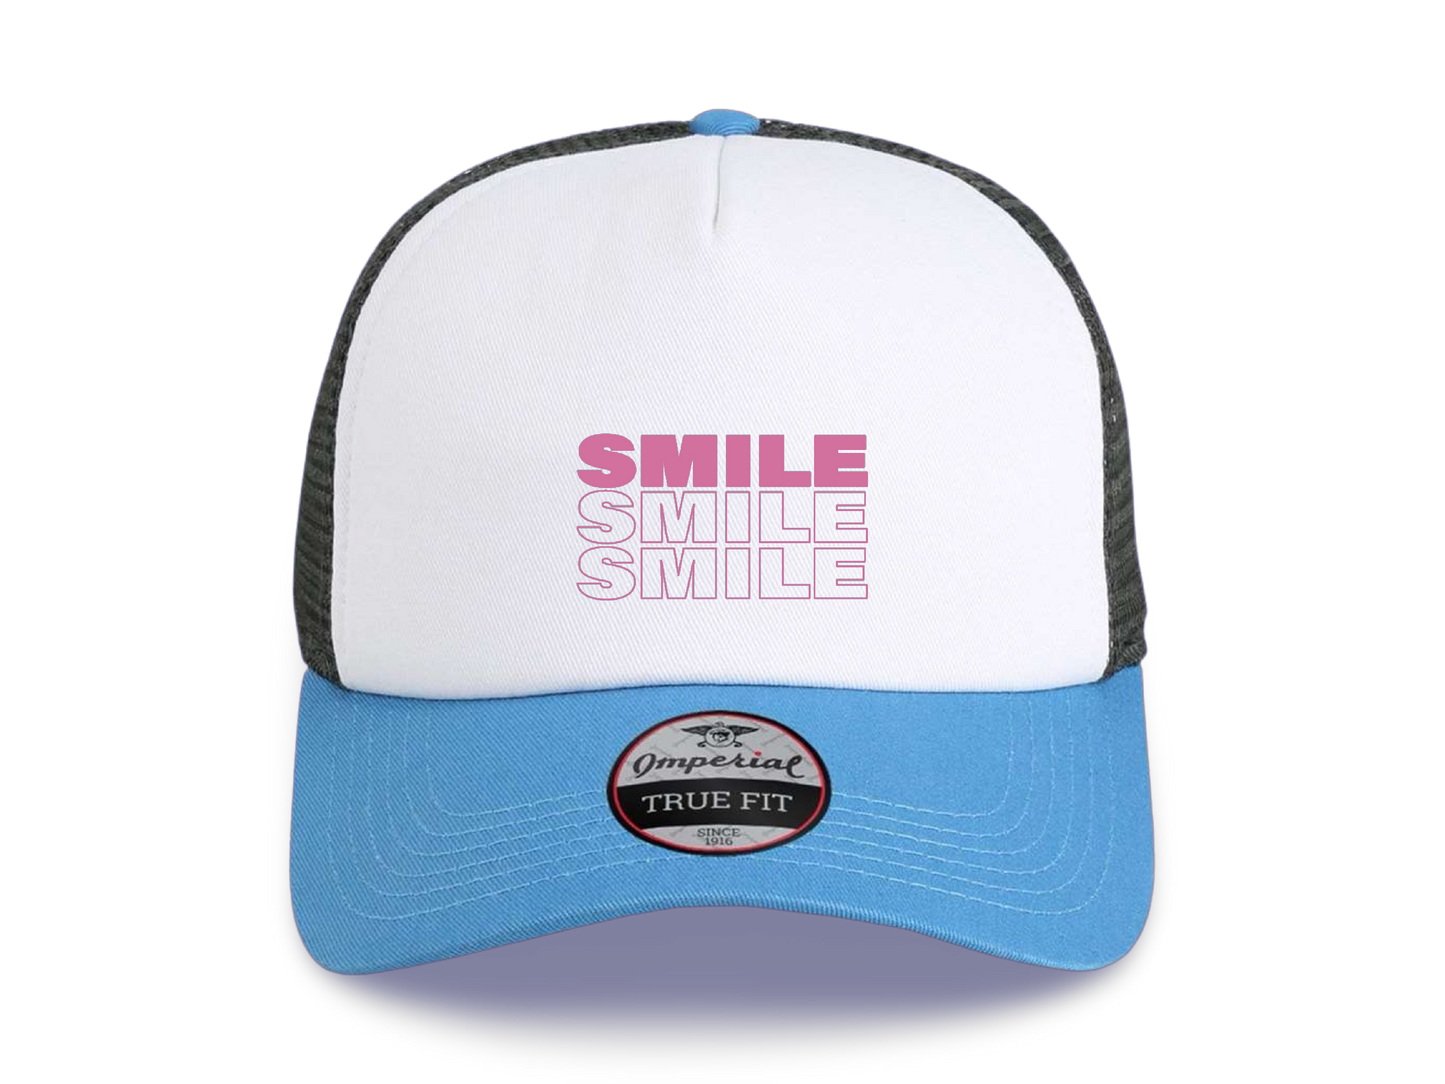 Full Of Smiles (Trucker Hat x Imperial)